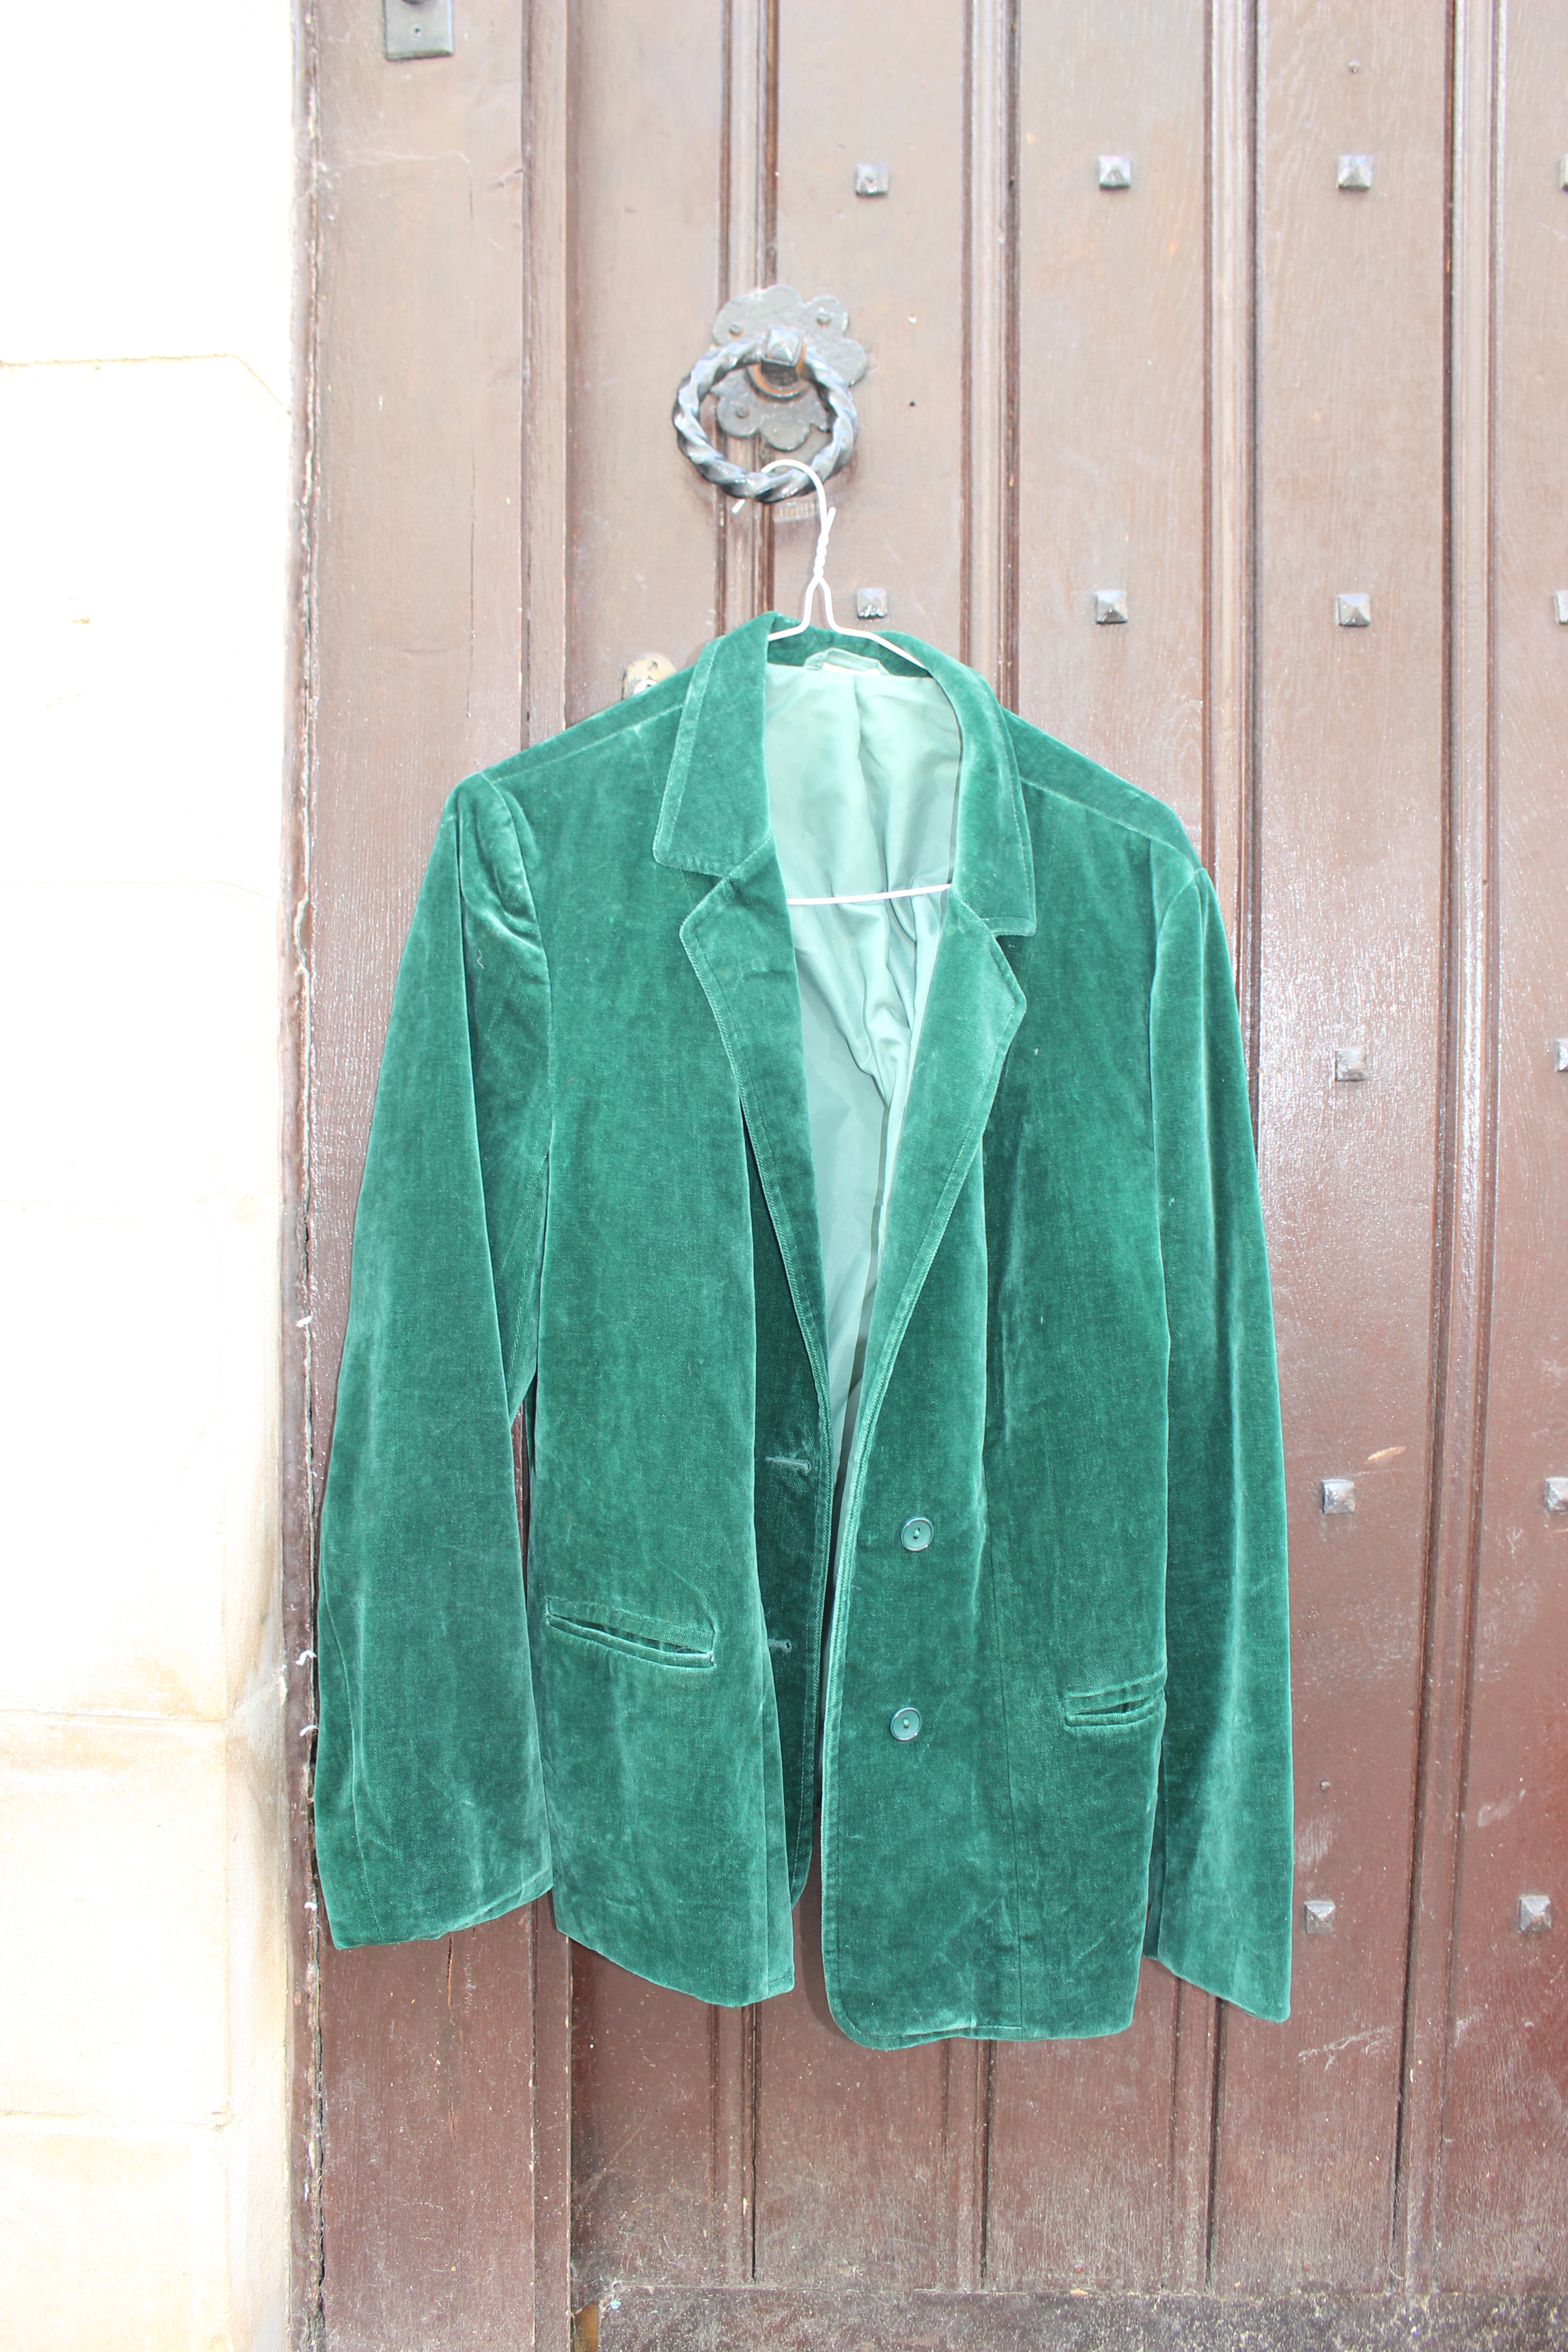 Soft green velvet jacket